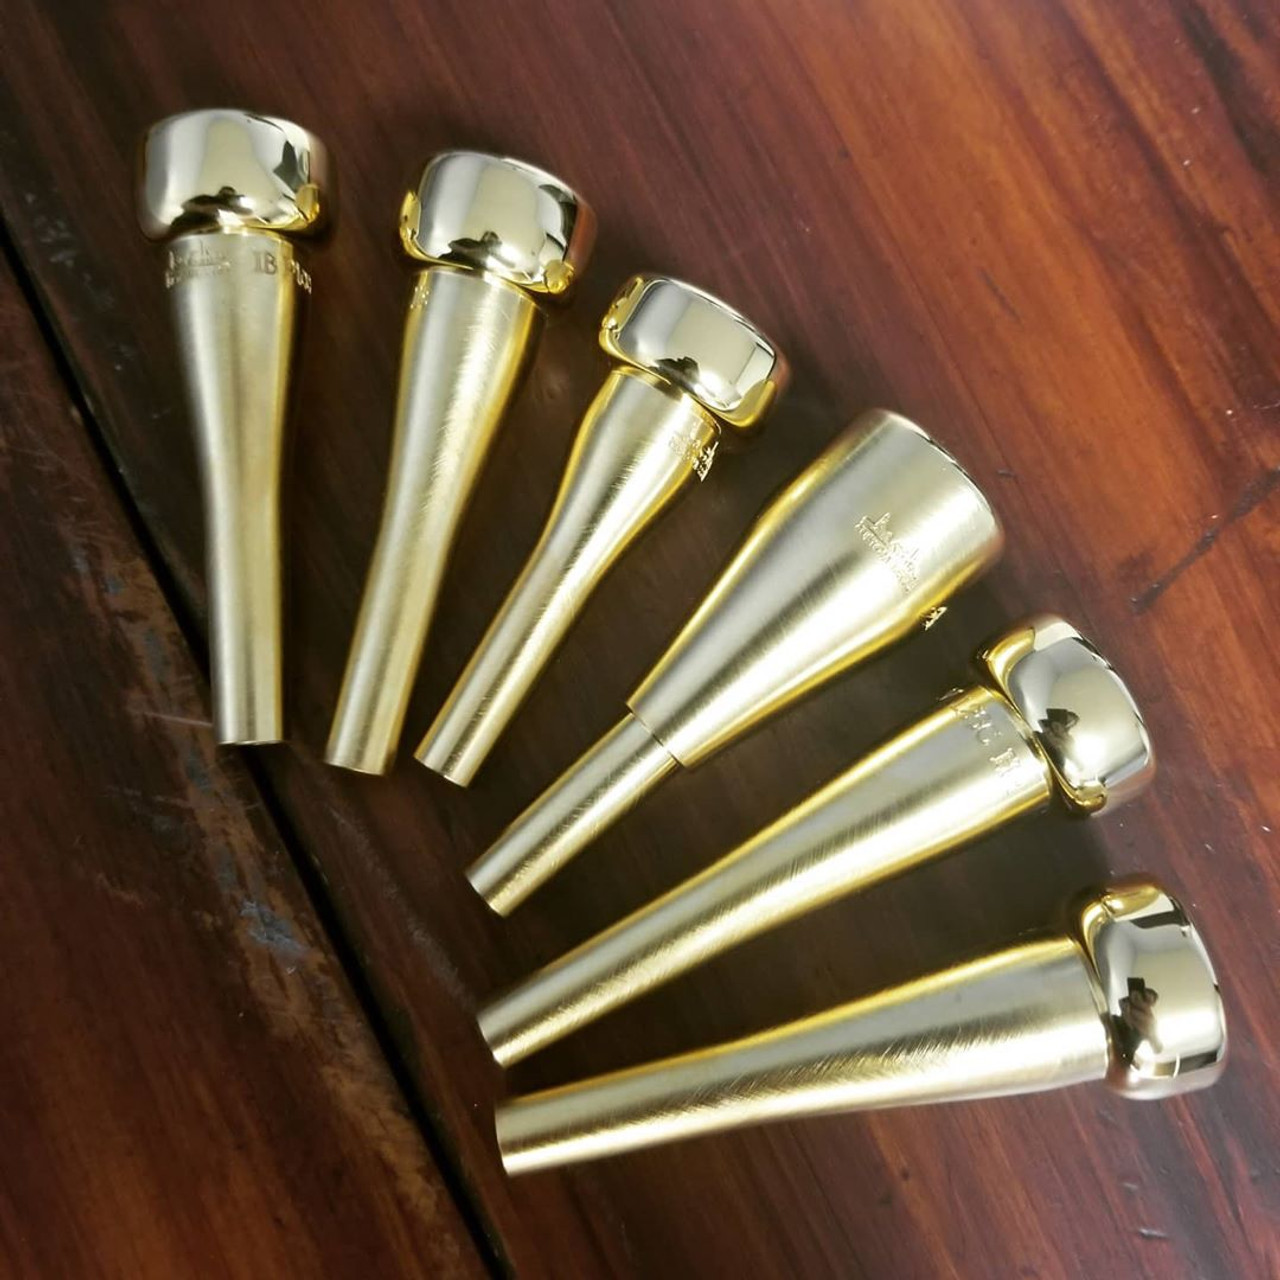 C Trumpet Accessories Set: Mouthpiece, Tone Bar, Case & More